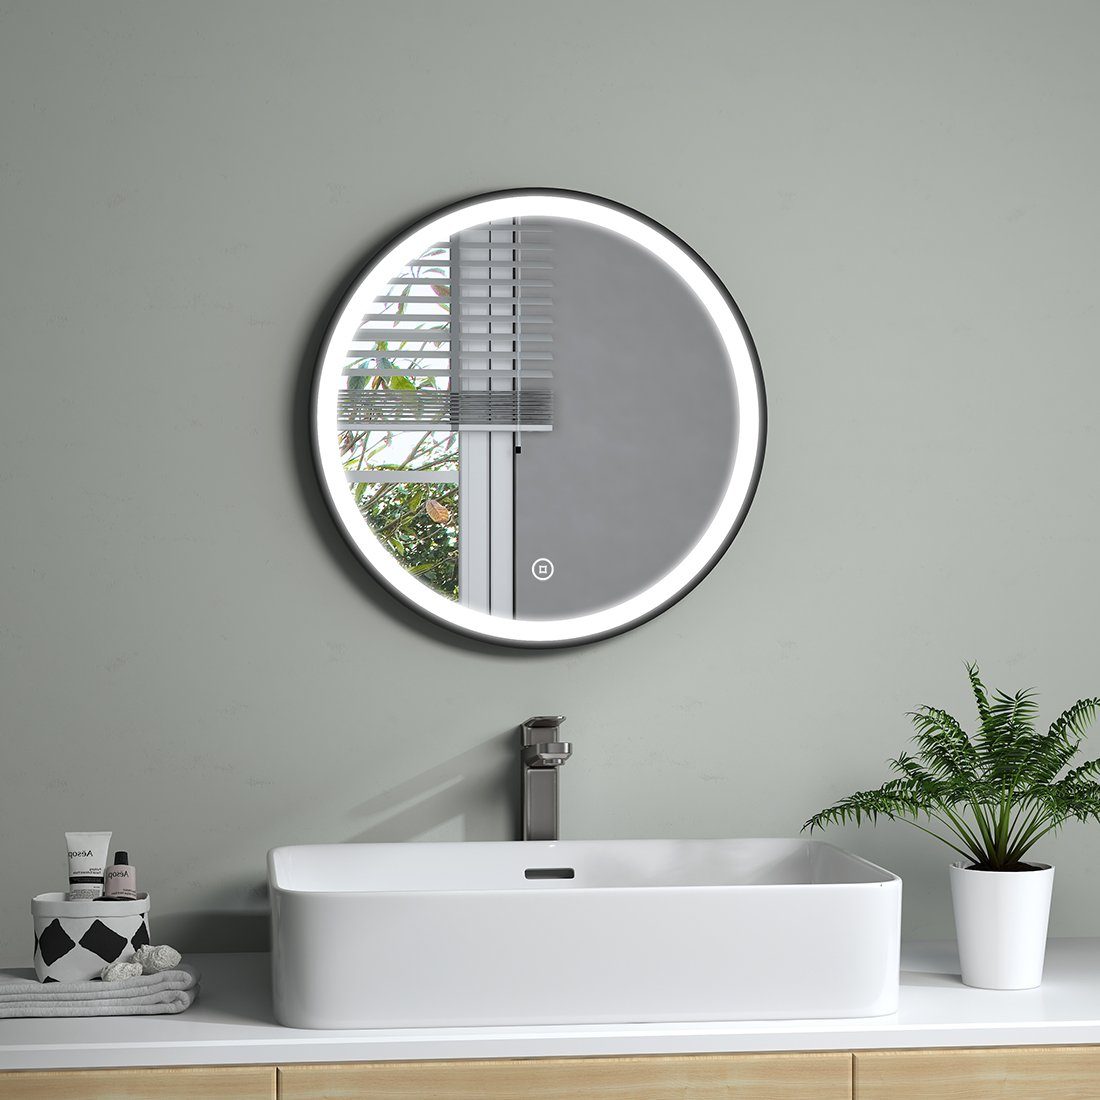 S'AFIELINA Badspiegel LED Badspiegel Rund Spiegel Badezimmerspiegel mit Beleuchtung Licht, Touch-Schalter,6500K Einstellbare Helligkeit,Energiesparend,IP44